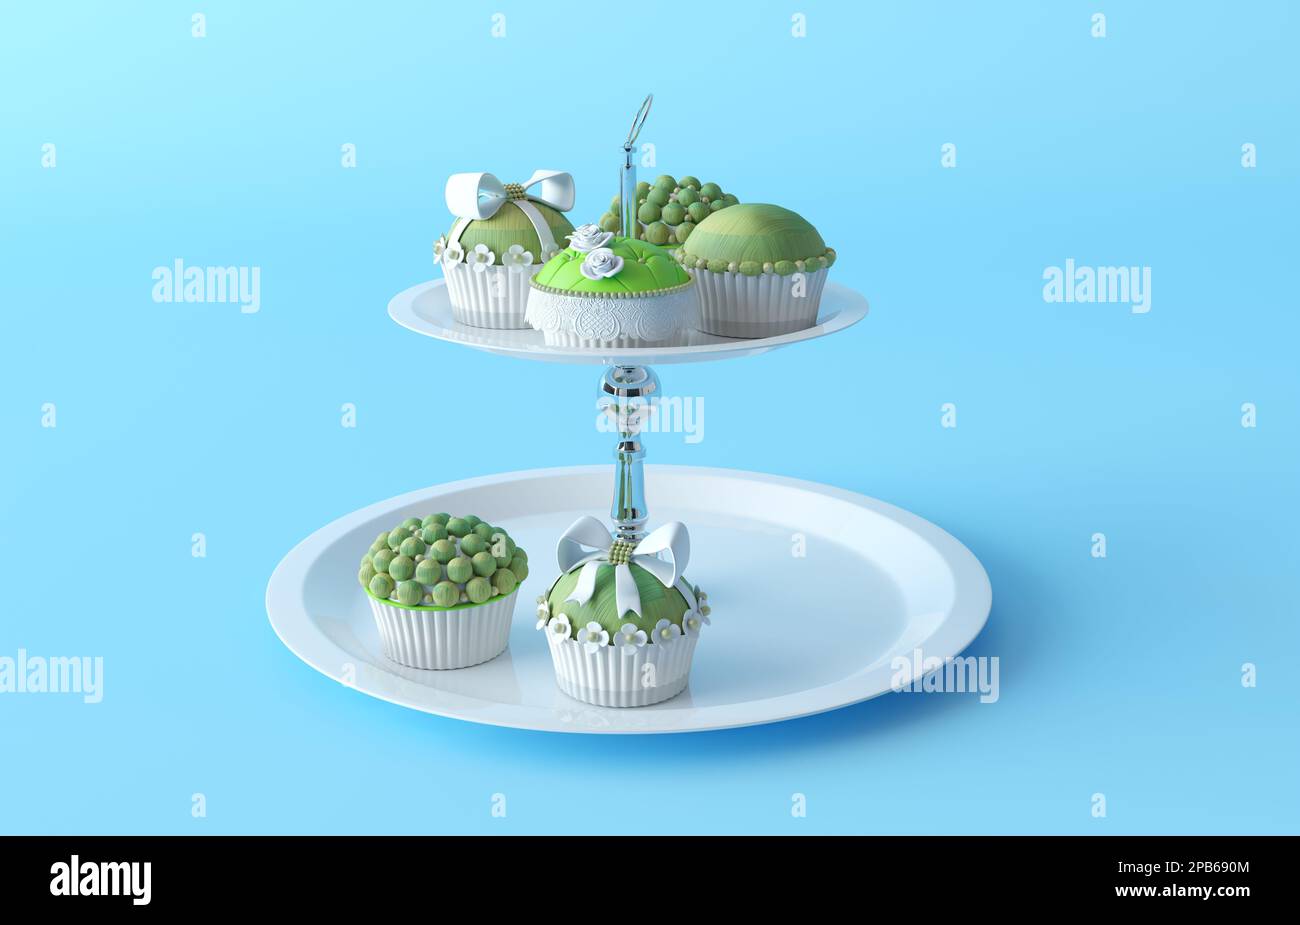 Abbildung eines Cupcake-Ständers mit Cupcakes. Grüne Cupcakes im Kunststoffdesign mit Schleife und Kugeln auf einem runden Ständer aus Metall mit mehreren Ebenen. 3D-Rendern Stockfoto